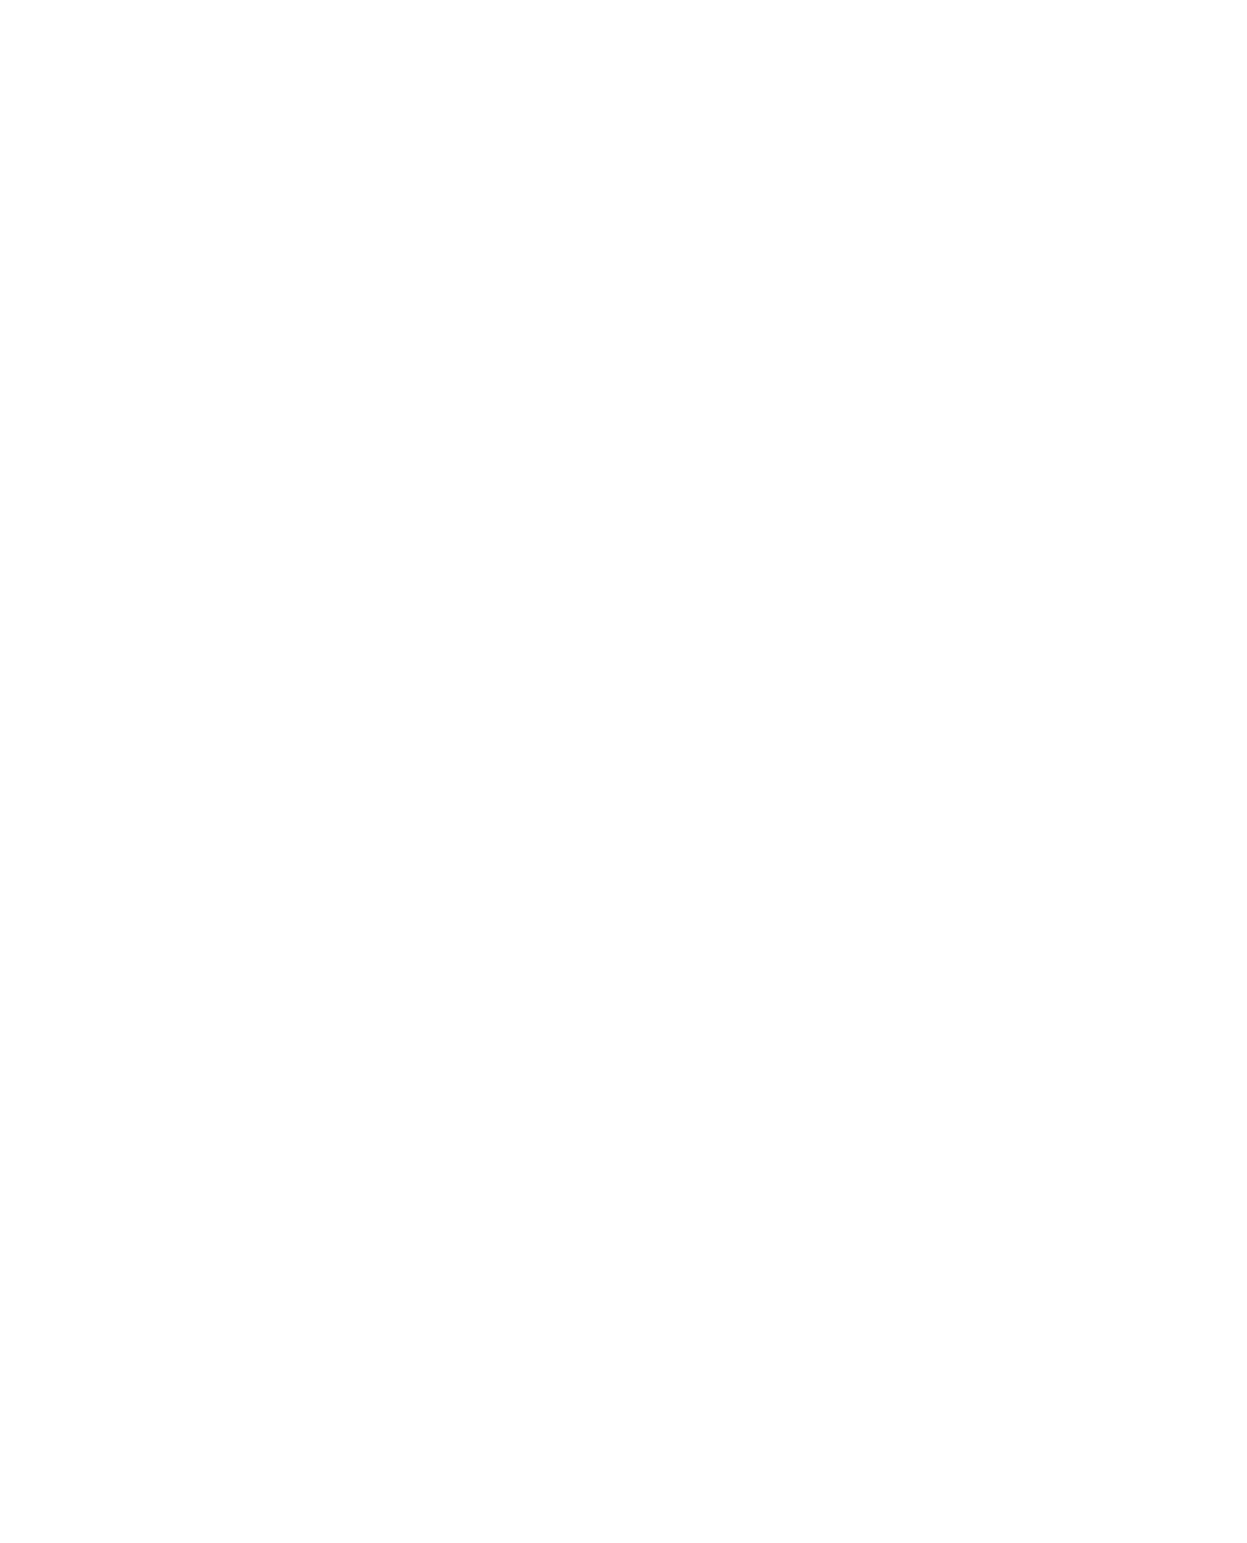 SSE logo pour fonds sombres (PNG transparent)